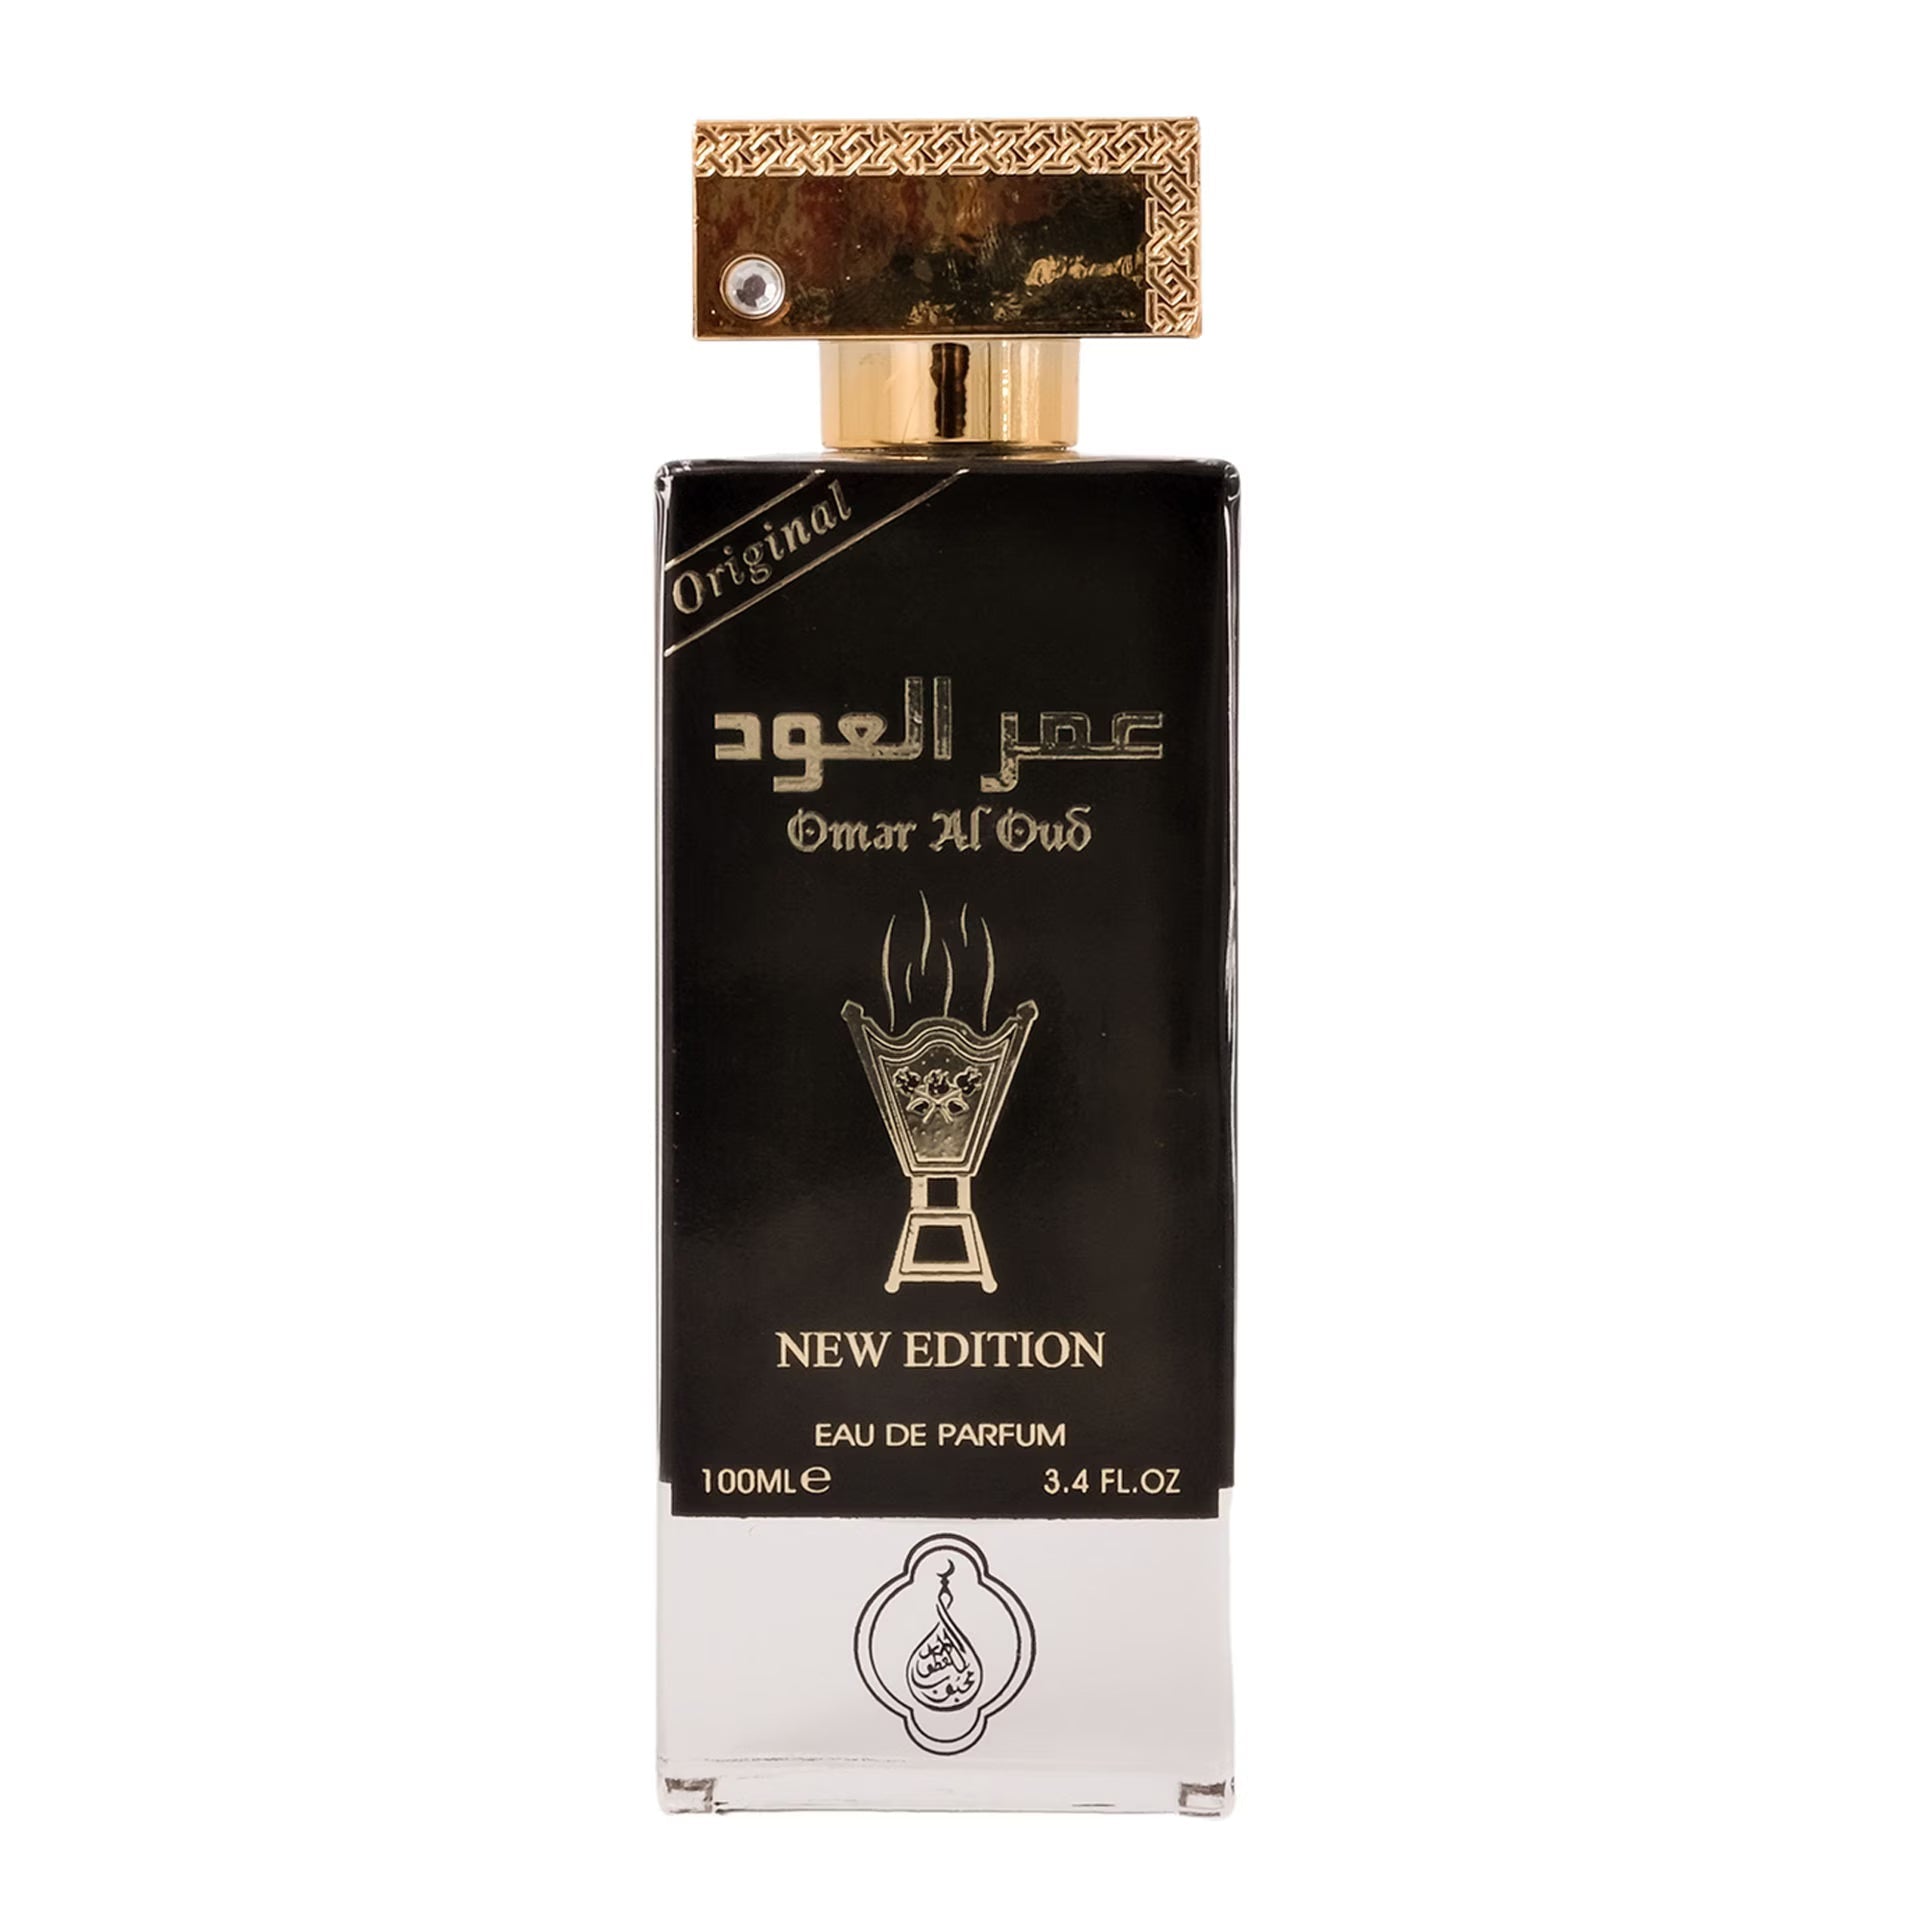 Omar al Oud Eau De Parfum New Edition 100ml Value Pack of 3 